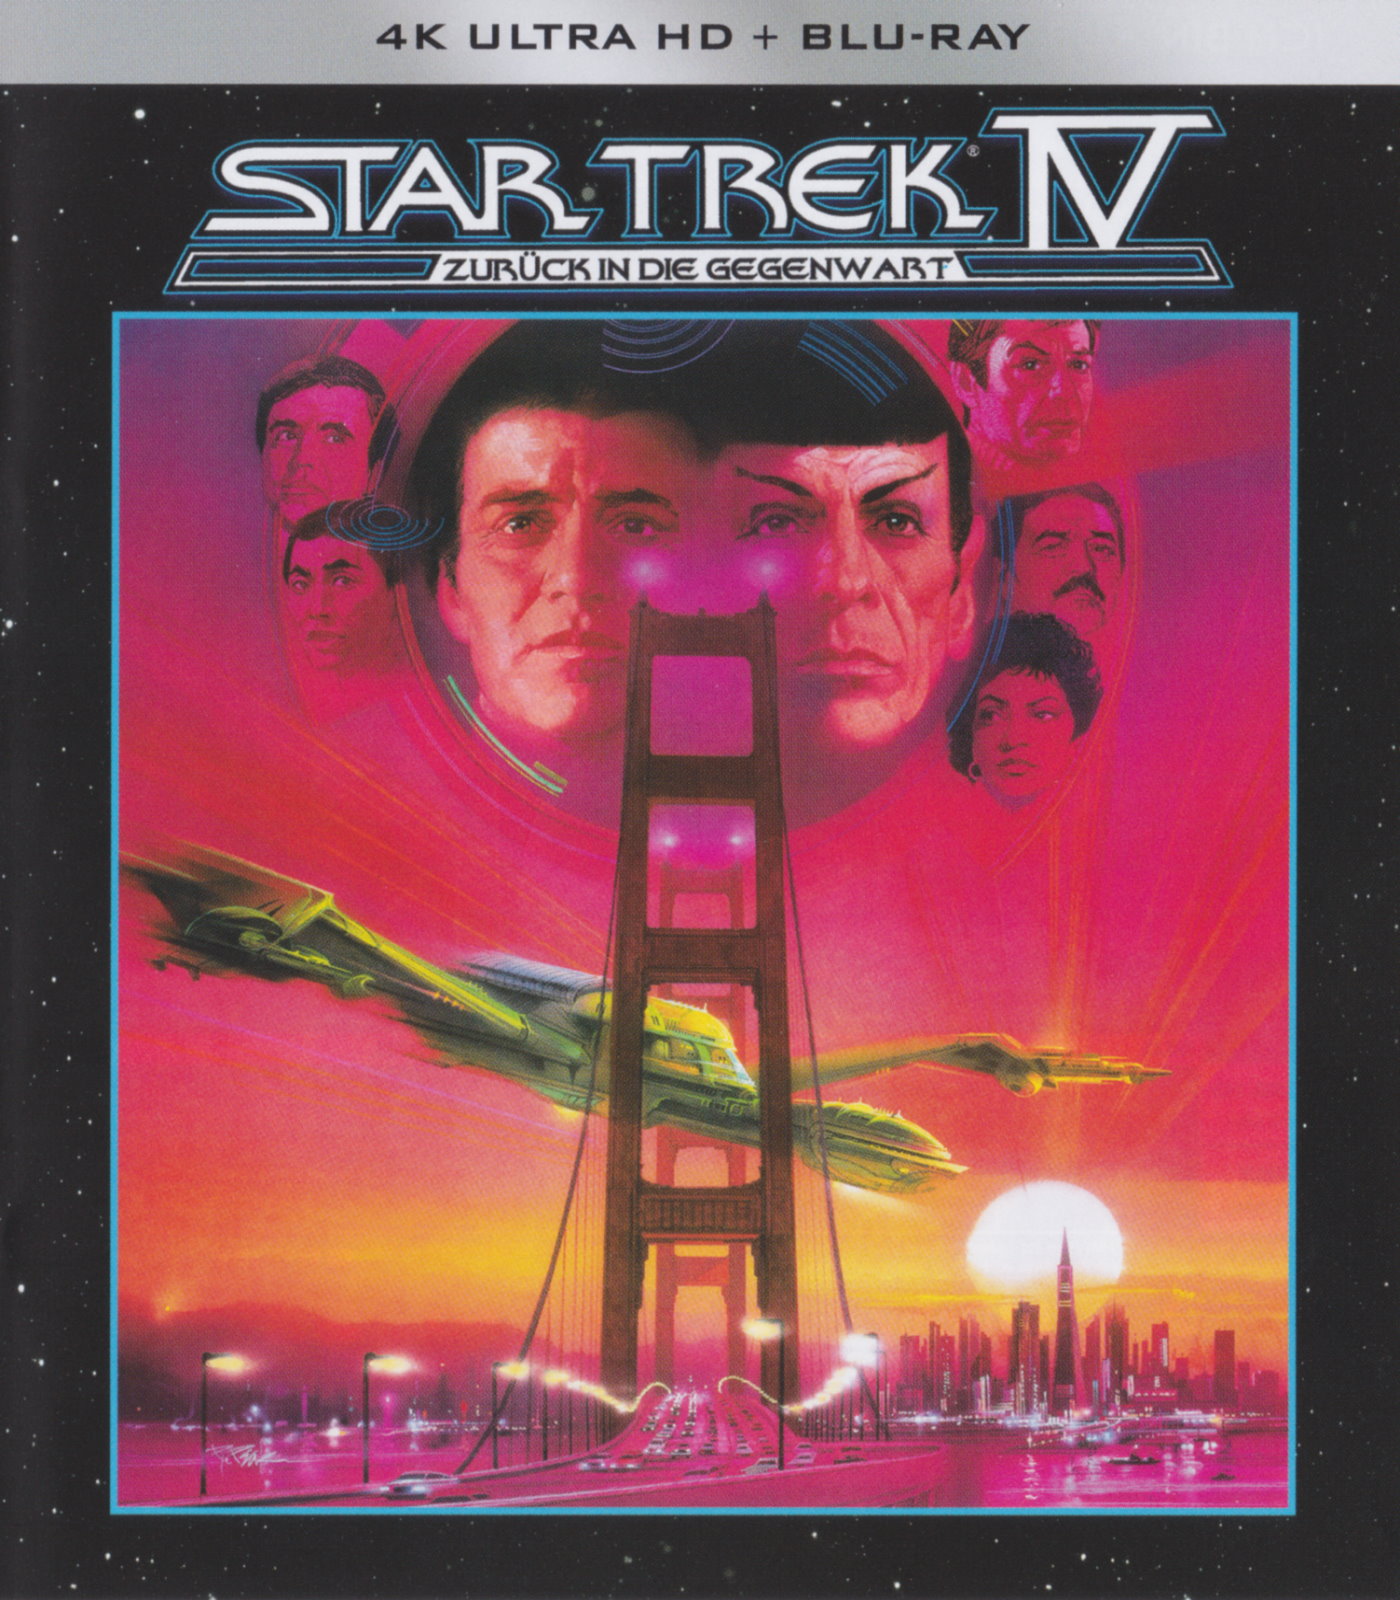 Cover - Star Trek IV - Zurück in die Vergangenheit.jpg